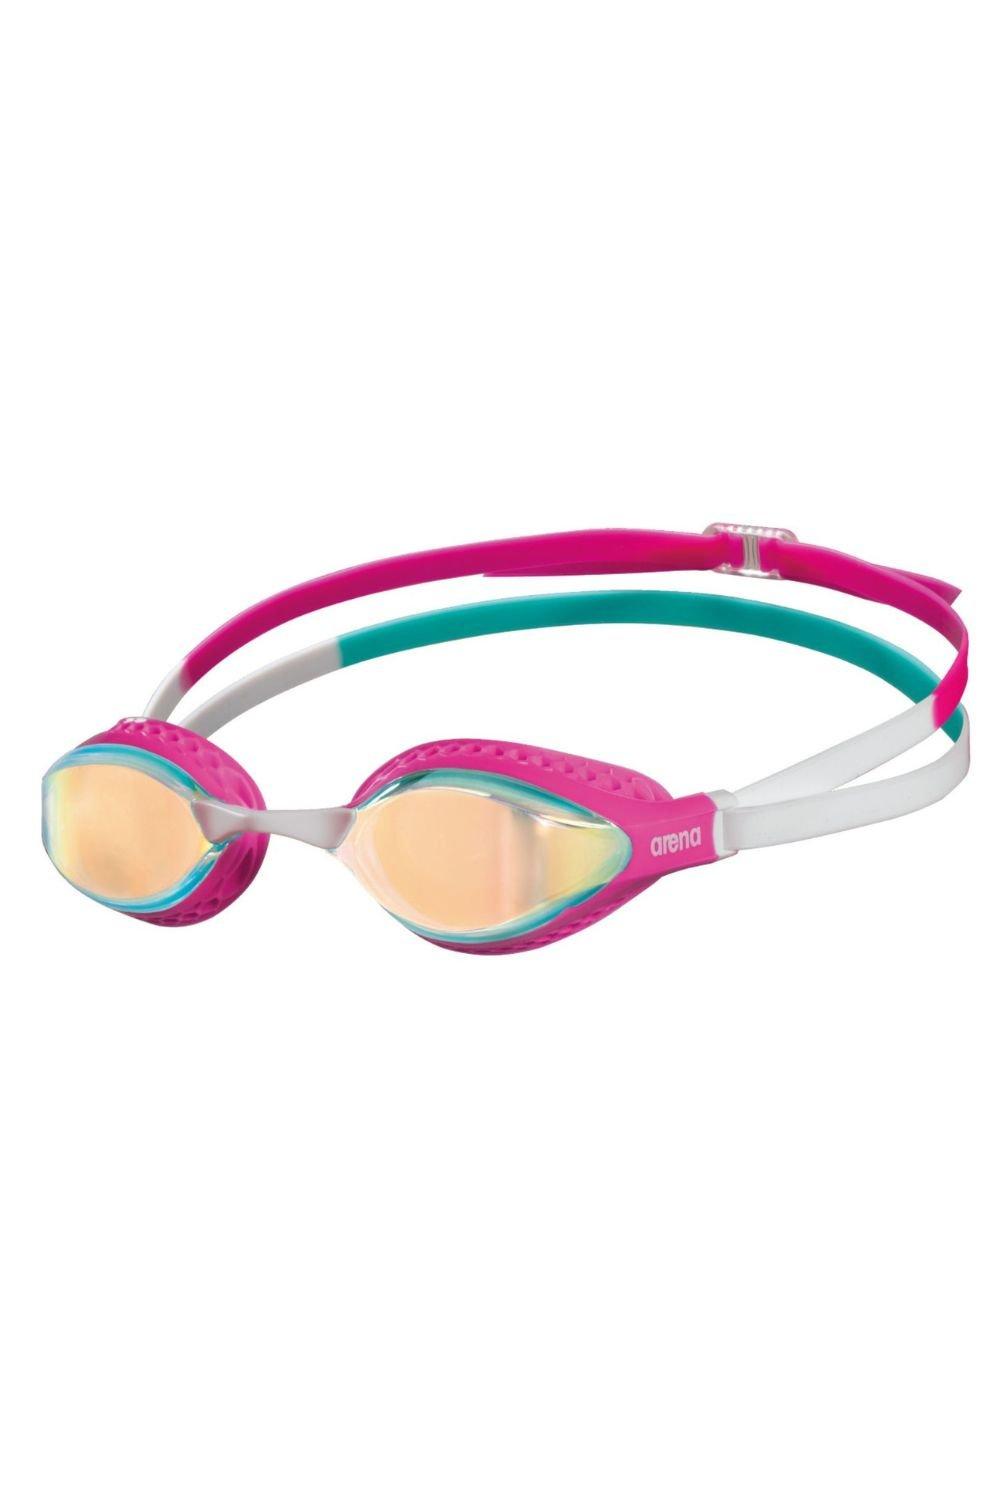 Очки для плавания с зеркалом Airspeed Arena, розовый очки для плавания с зеркалом airspeed arena серебро